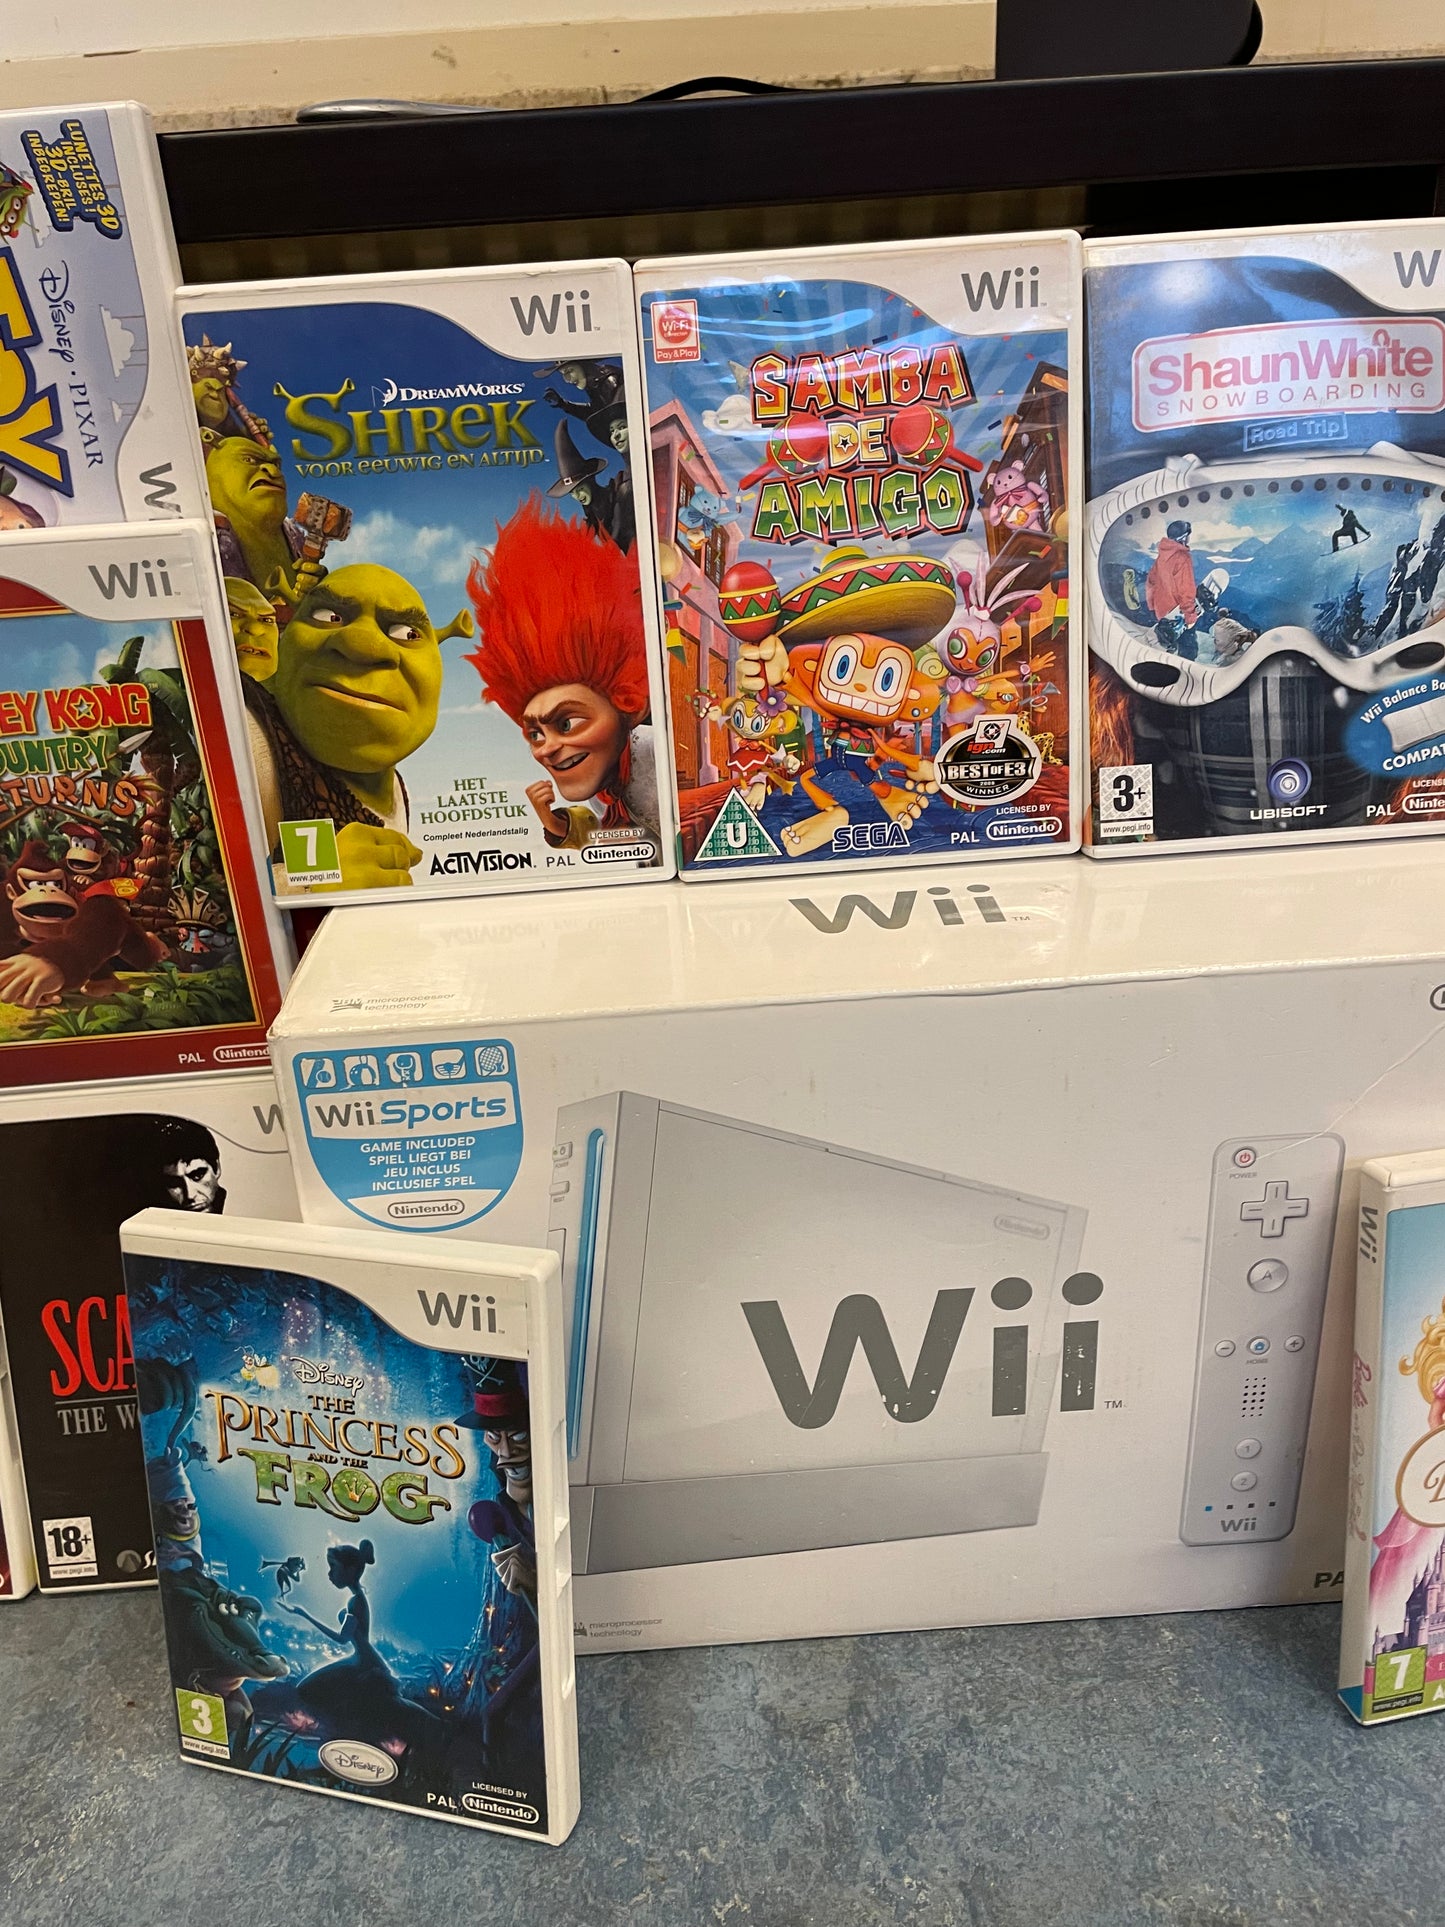 Nintendo Wii compleet in originele doos + 12 games [UITSTEKENDE STAAT]